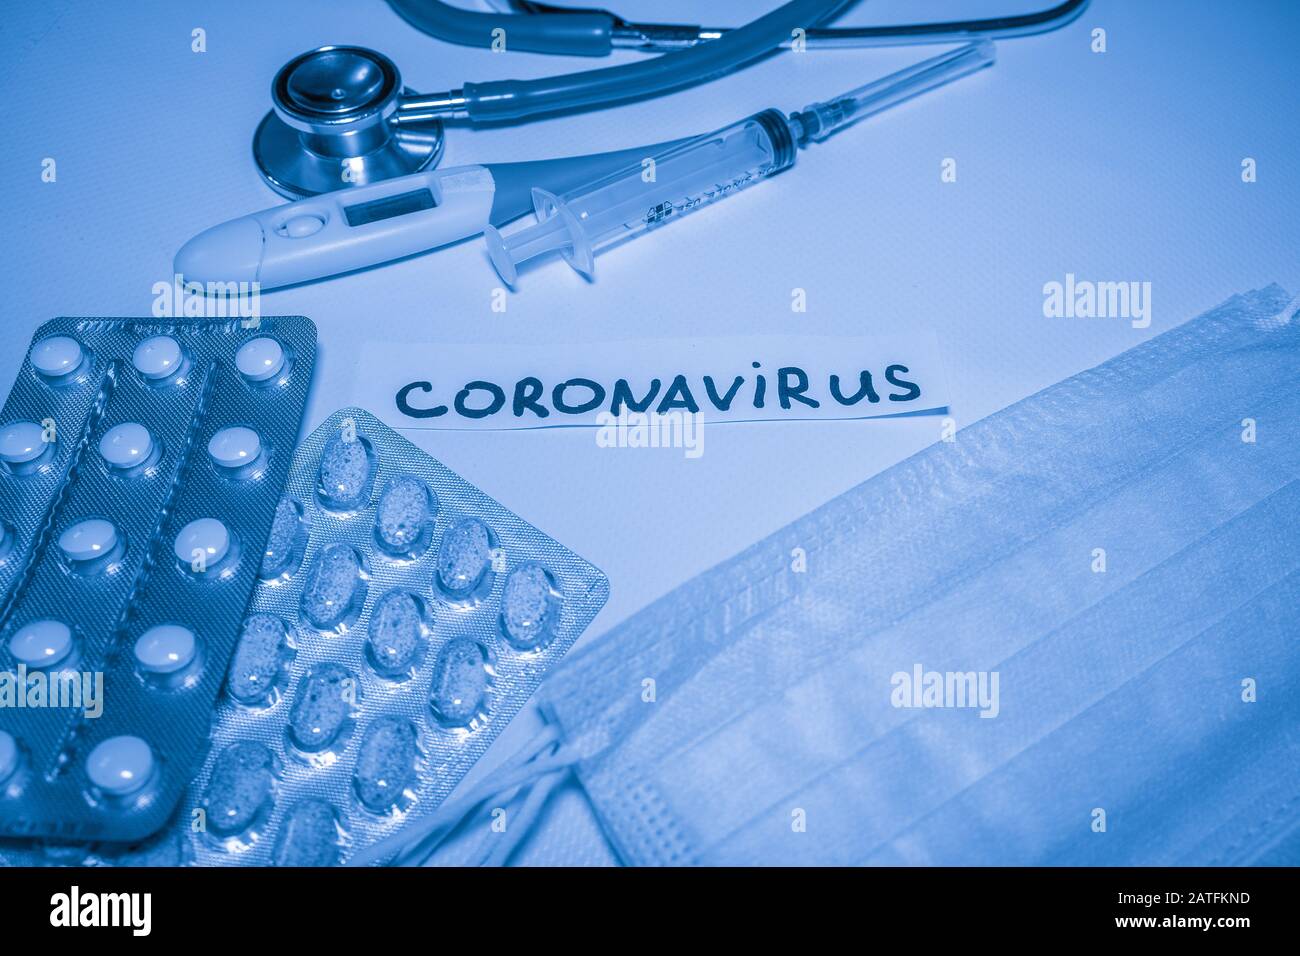 Novel coronavirus-2019-nCoV. Medical blue background with inscription coronavirus, stethoscope, pills, thermometer, syringe. Stock Photo